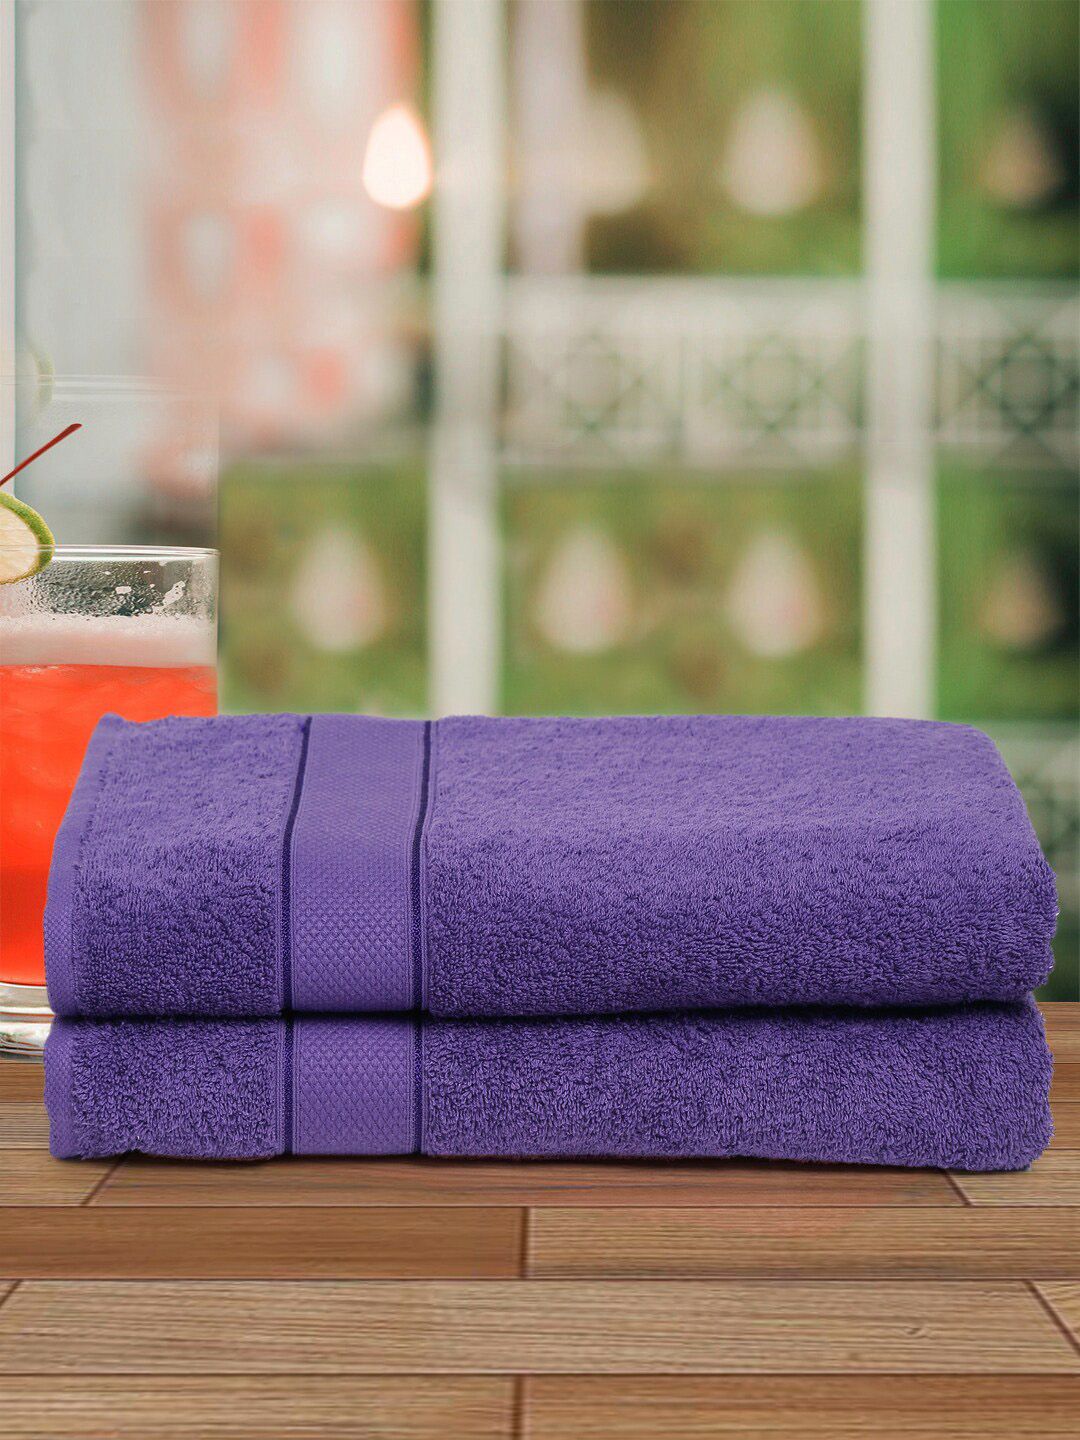 Creeva Unisex Violet Pack of 2 Bath Set Towel Price in India